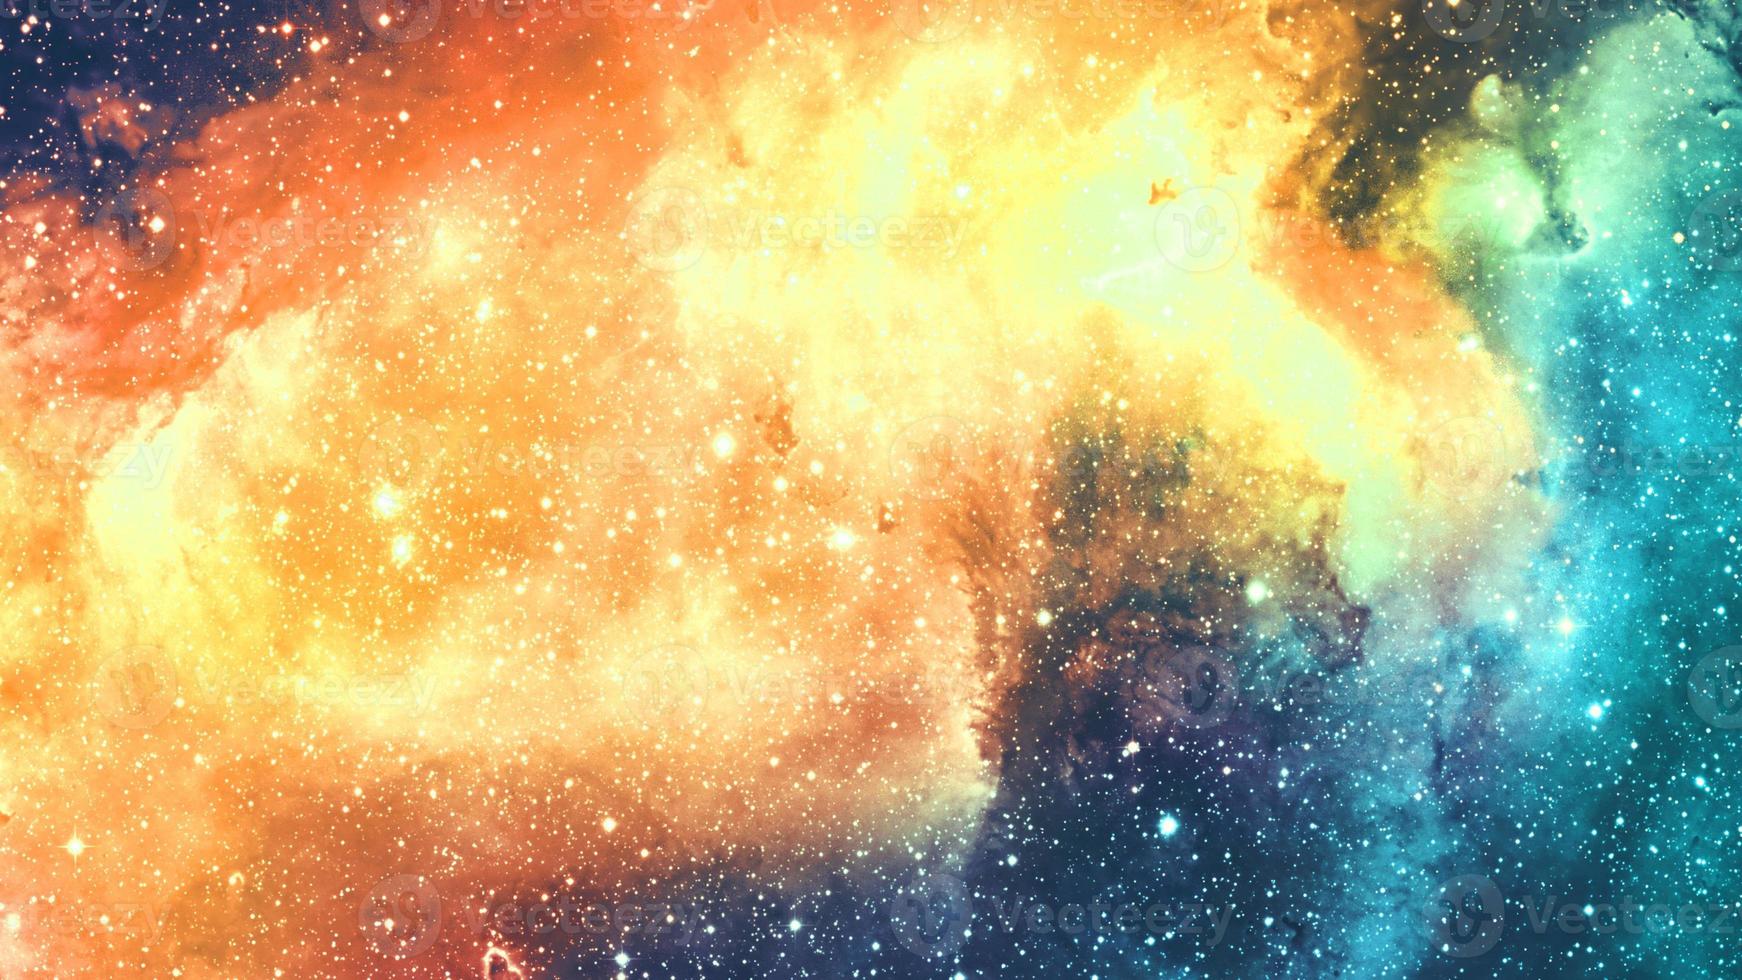 infinito cosmos hermoso fondo amarillo y azul claro con nebulosa, cúmulo de estrellas en el espacio exterior. belleza del universo infinito lleno de estrellas arte cósmico, papel tapiz de ciencia ficción foto